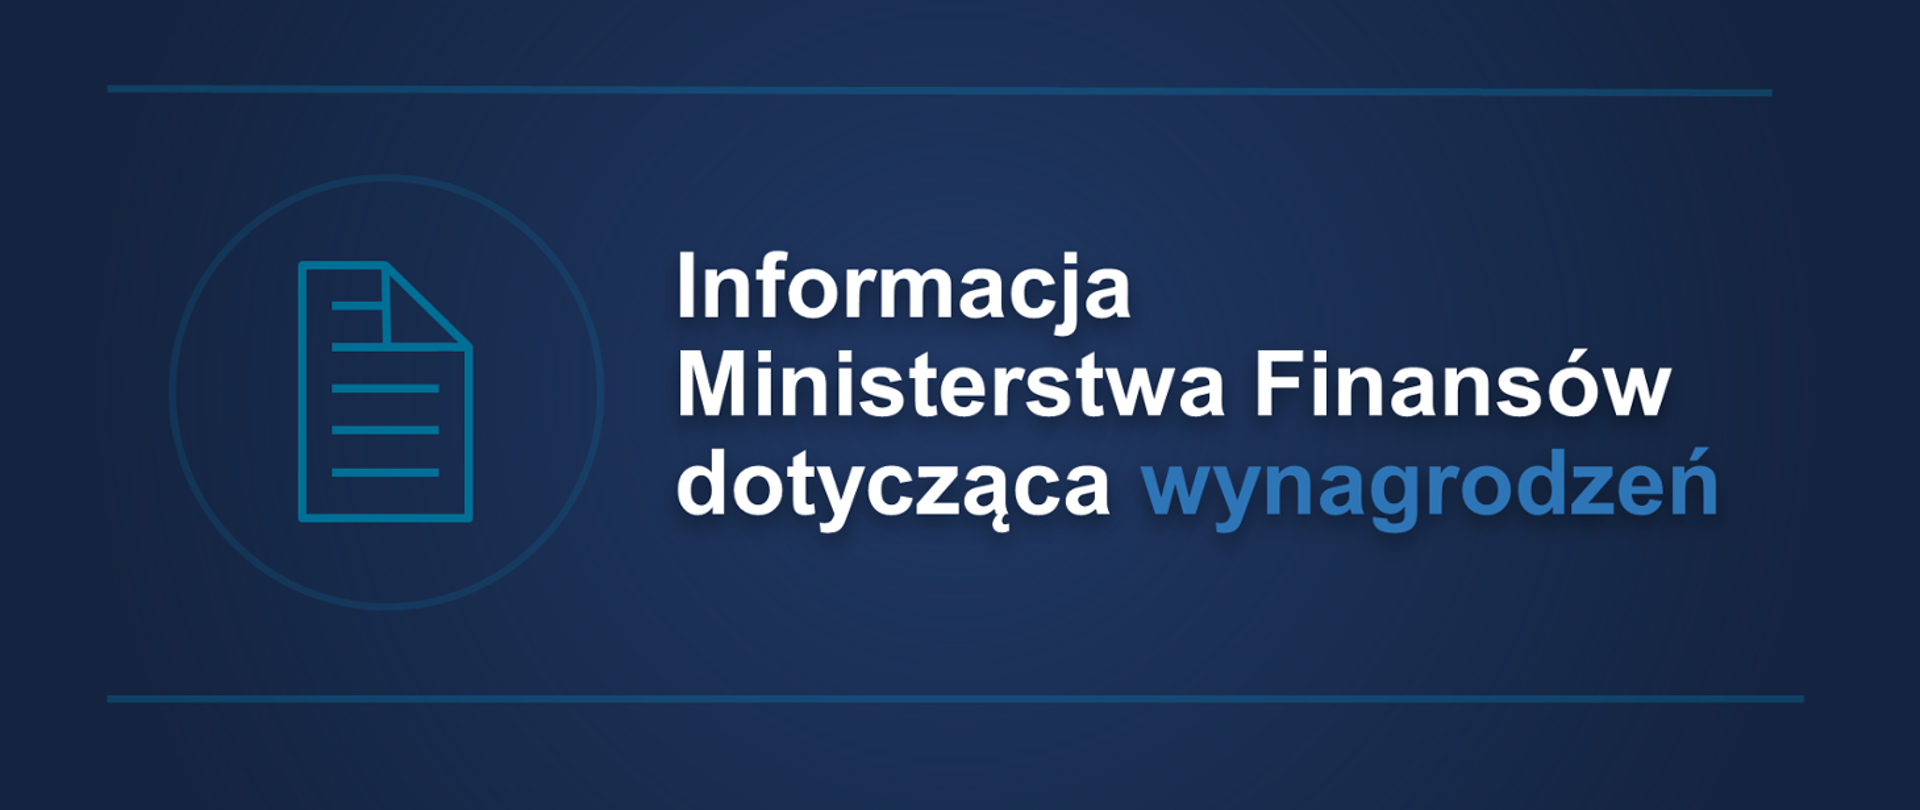 Grafika z tekstem „Informacja Ministerstwa Finansów dotycząca wynagrodzeń”